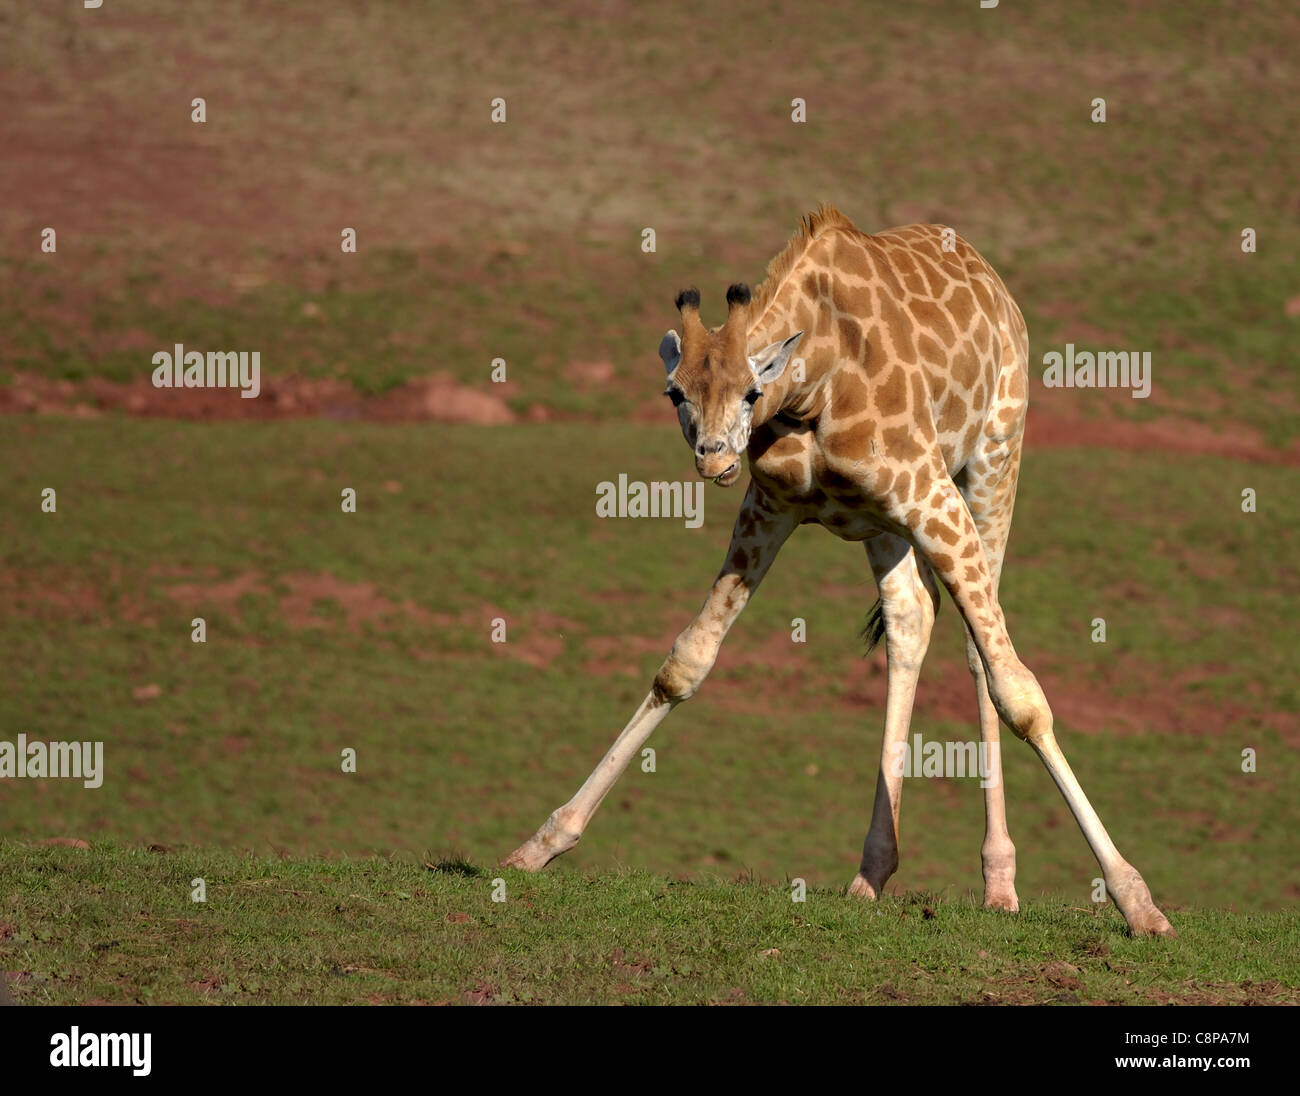 Young Giraffe at South Lakes Animal Park Stock Photo